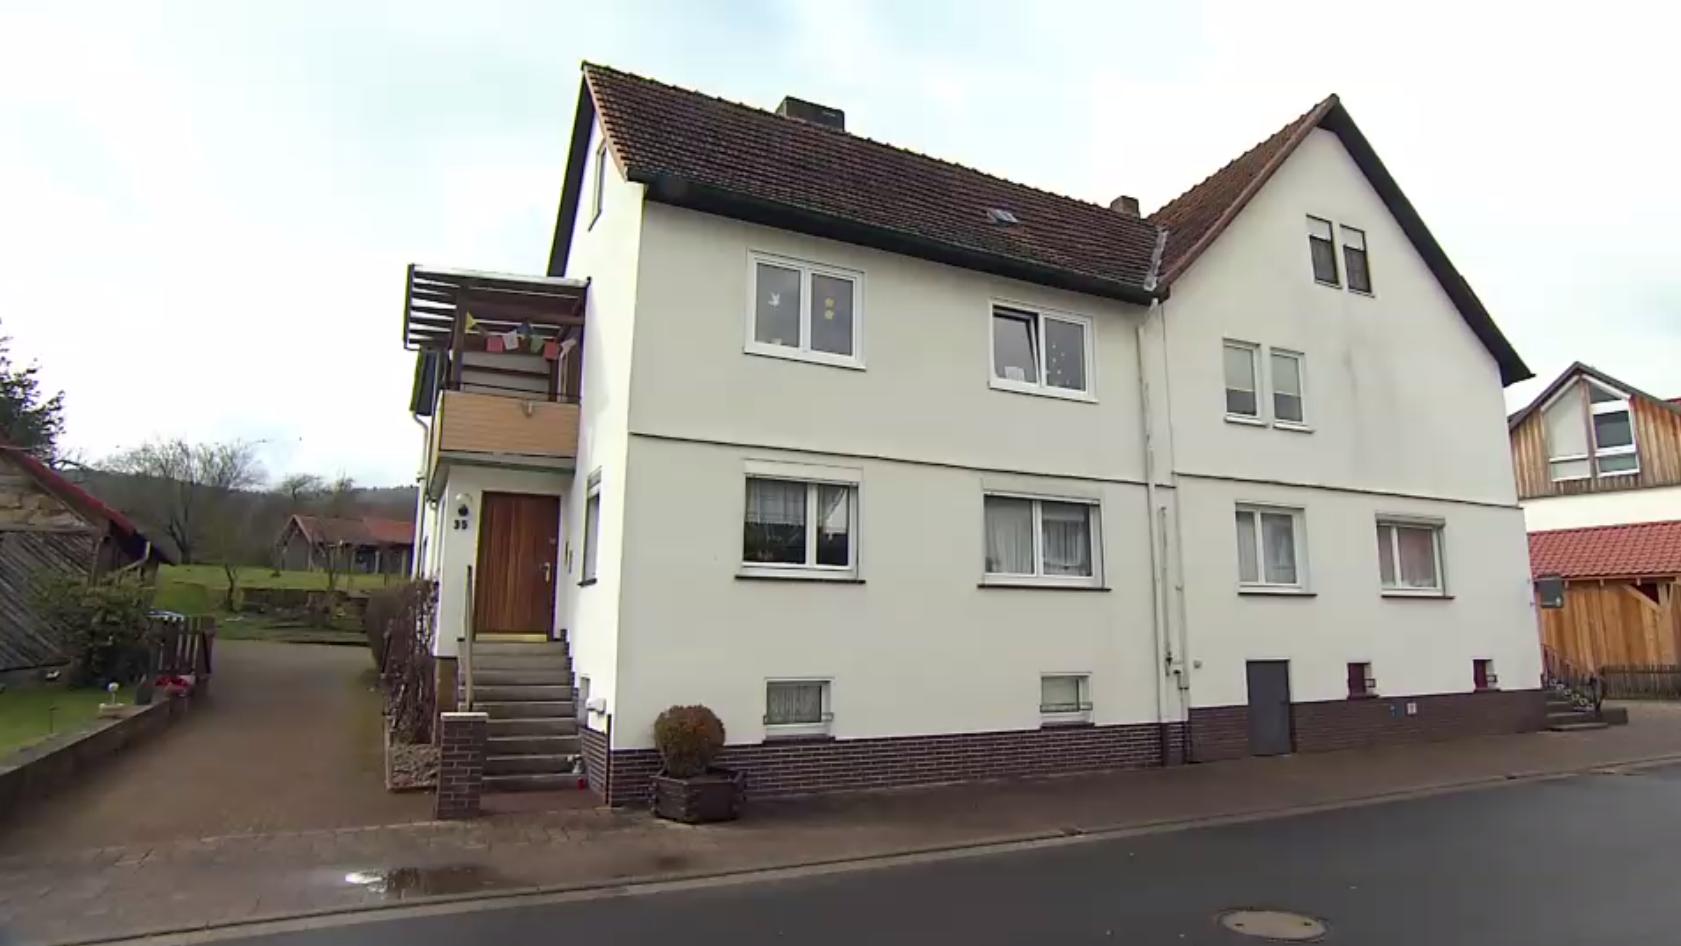 In diesem Haus in Spangenberg-Mörshausen lebten die getötete Frau und der mutmaßliche Täter Marvin K.